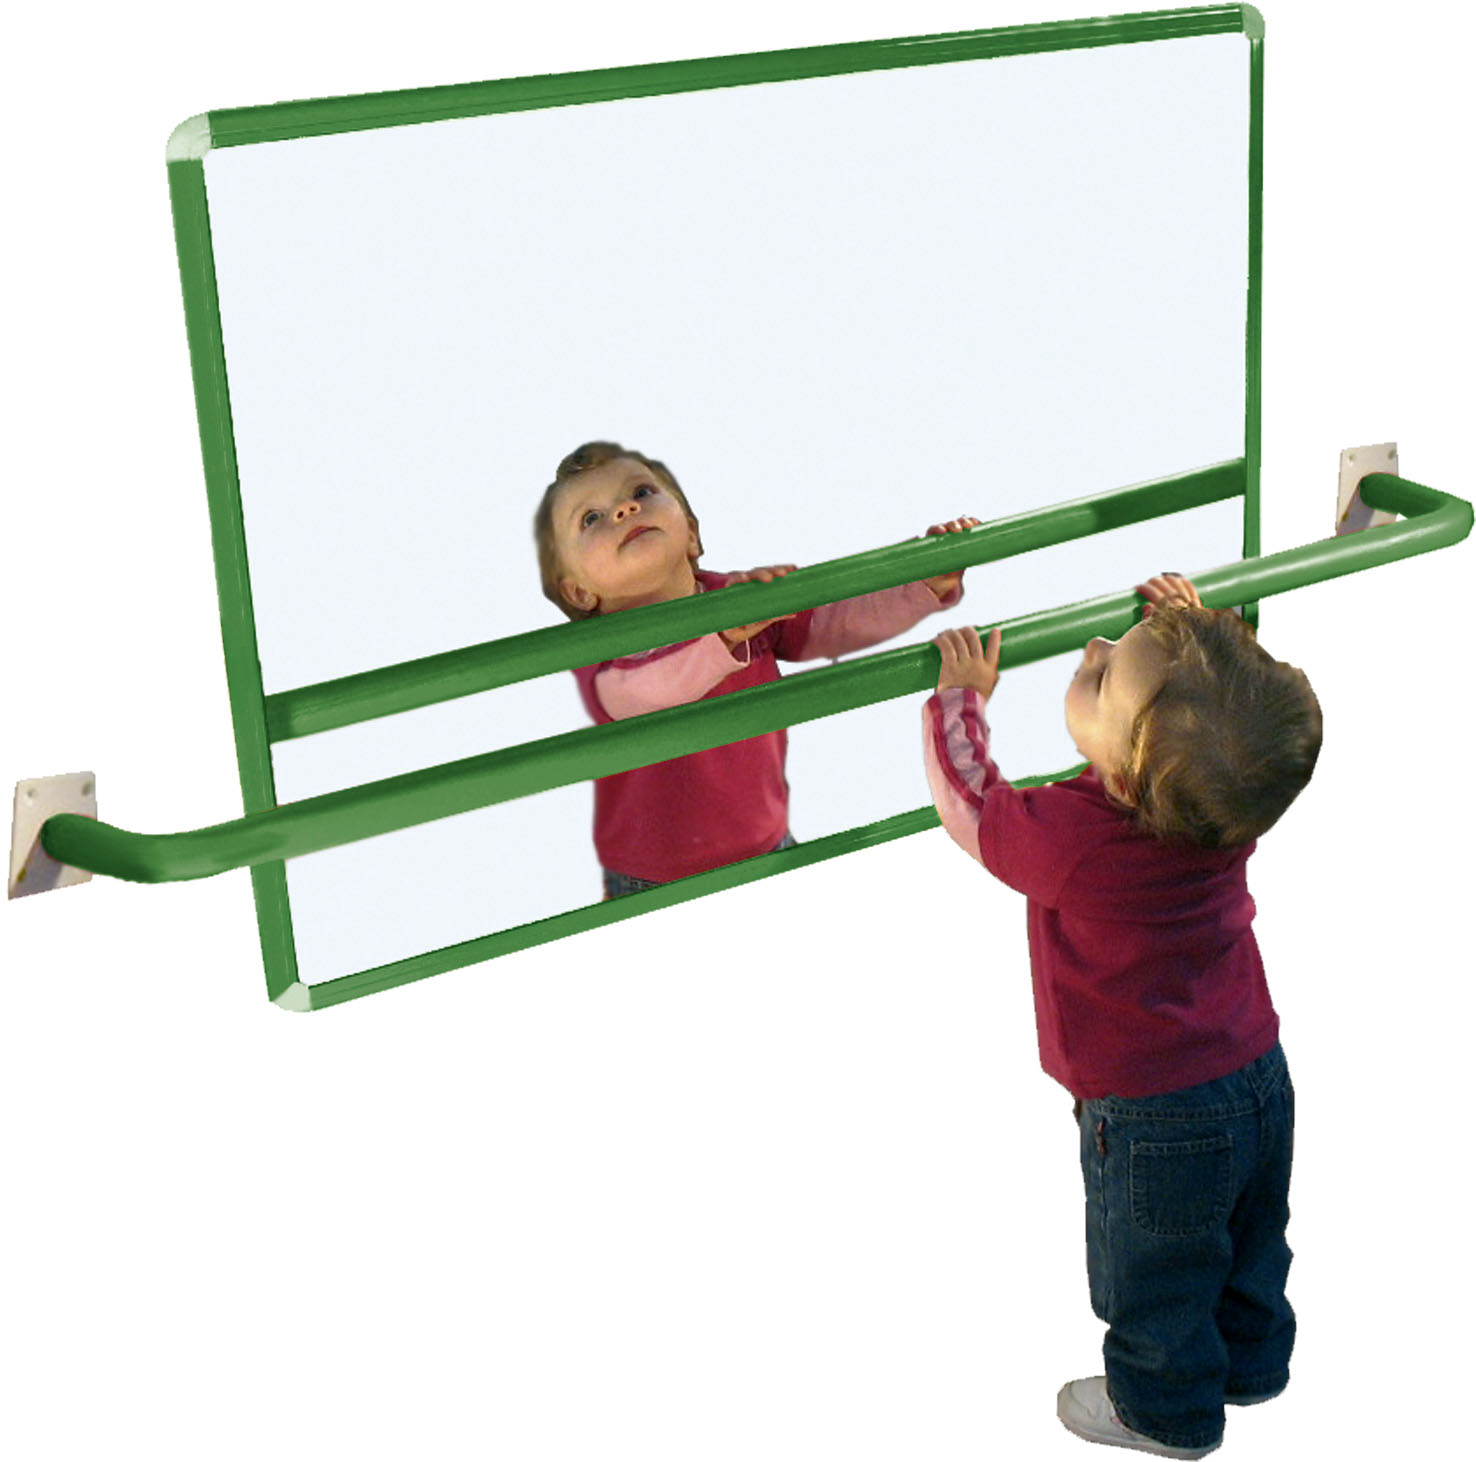 Nerozbitné zrcadlo - dětské zrcadlo s hliníkovým rámem